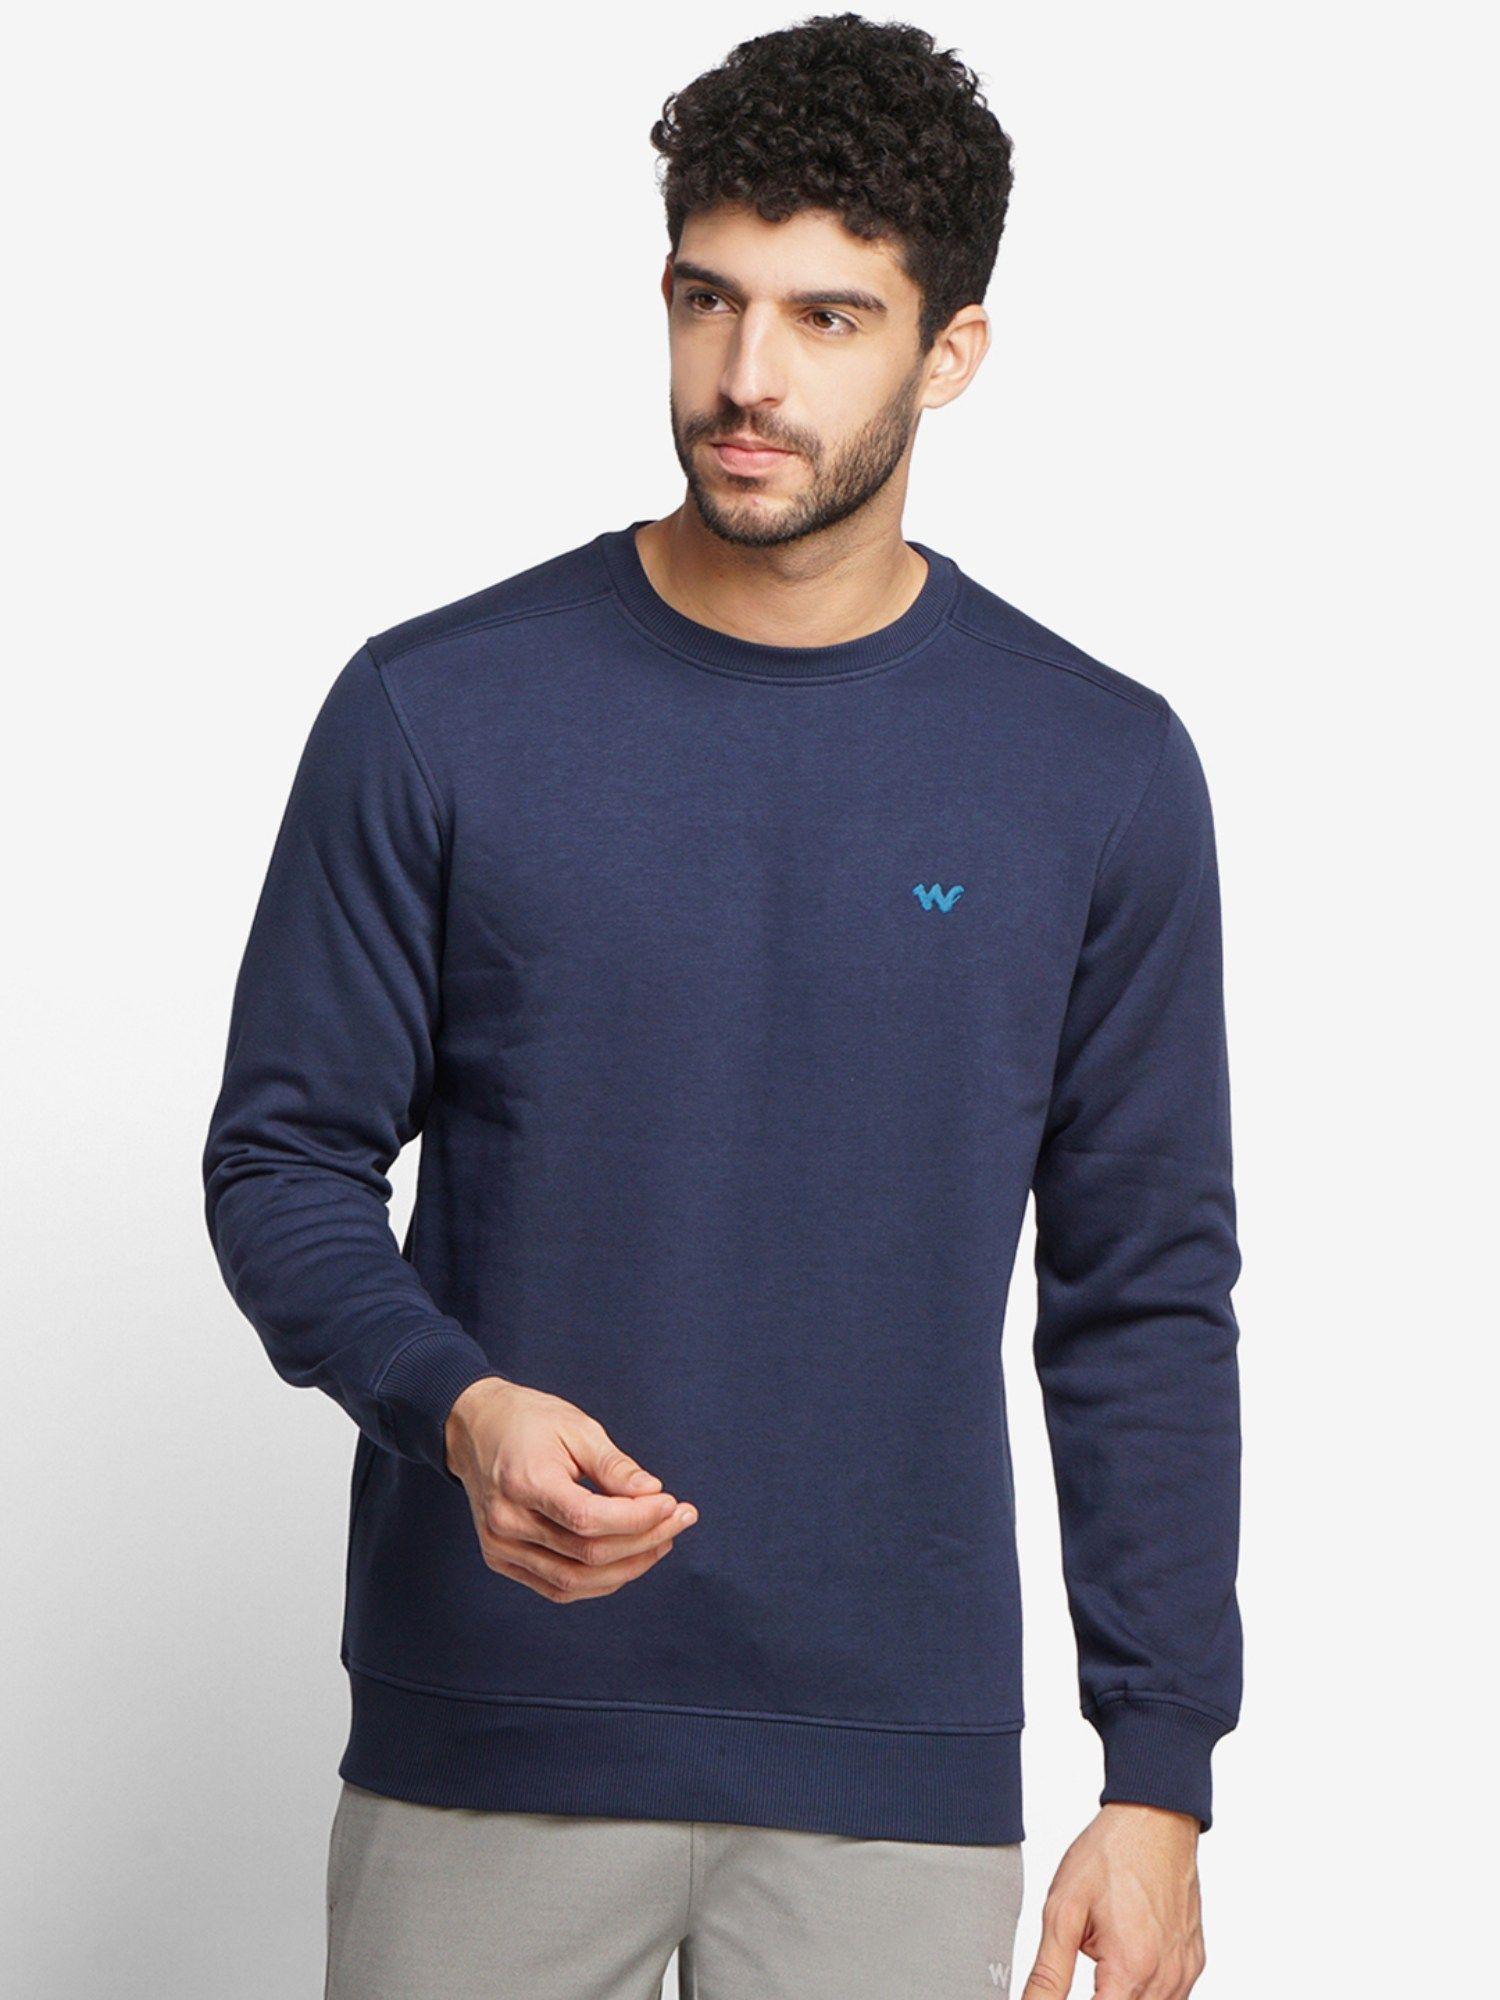 men-navy-blue-sweatshirt